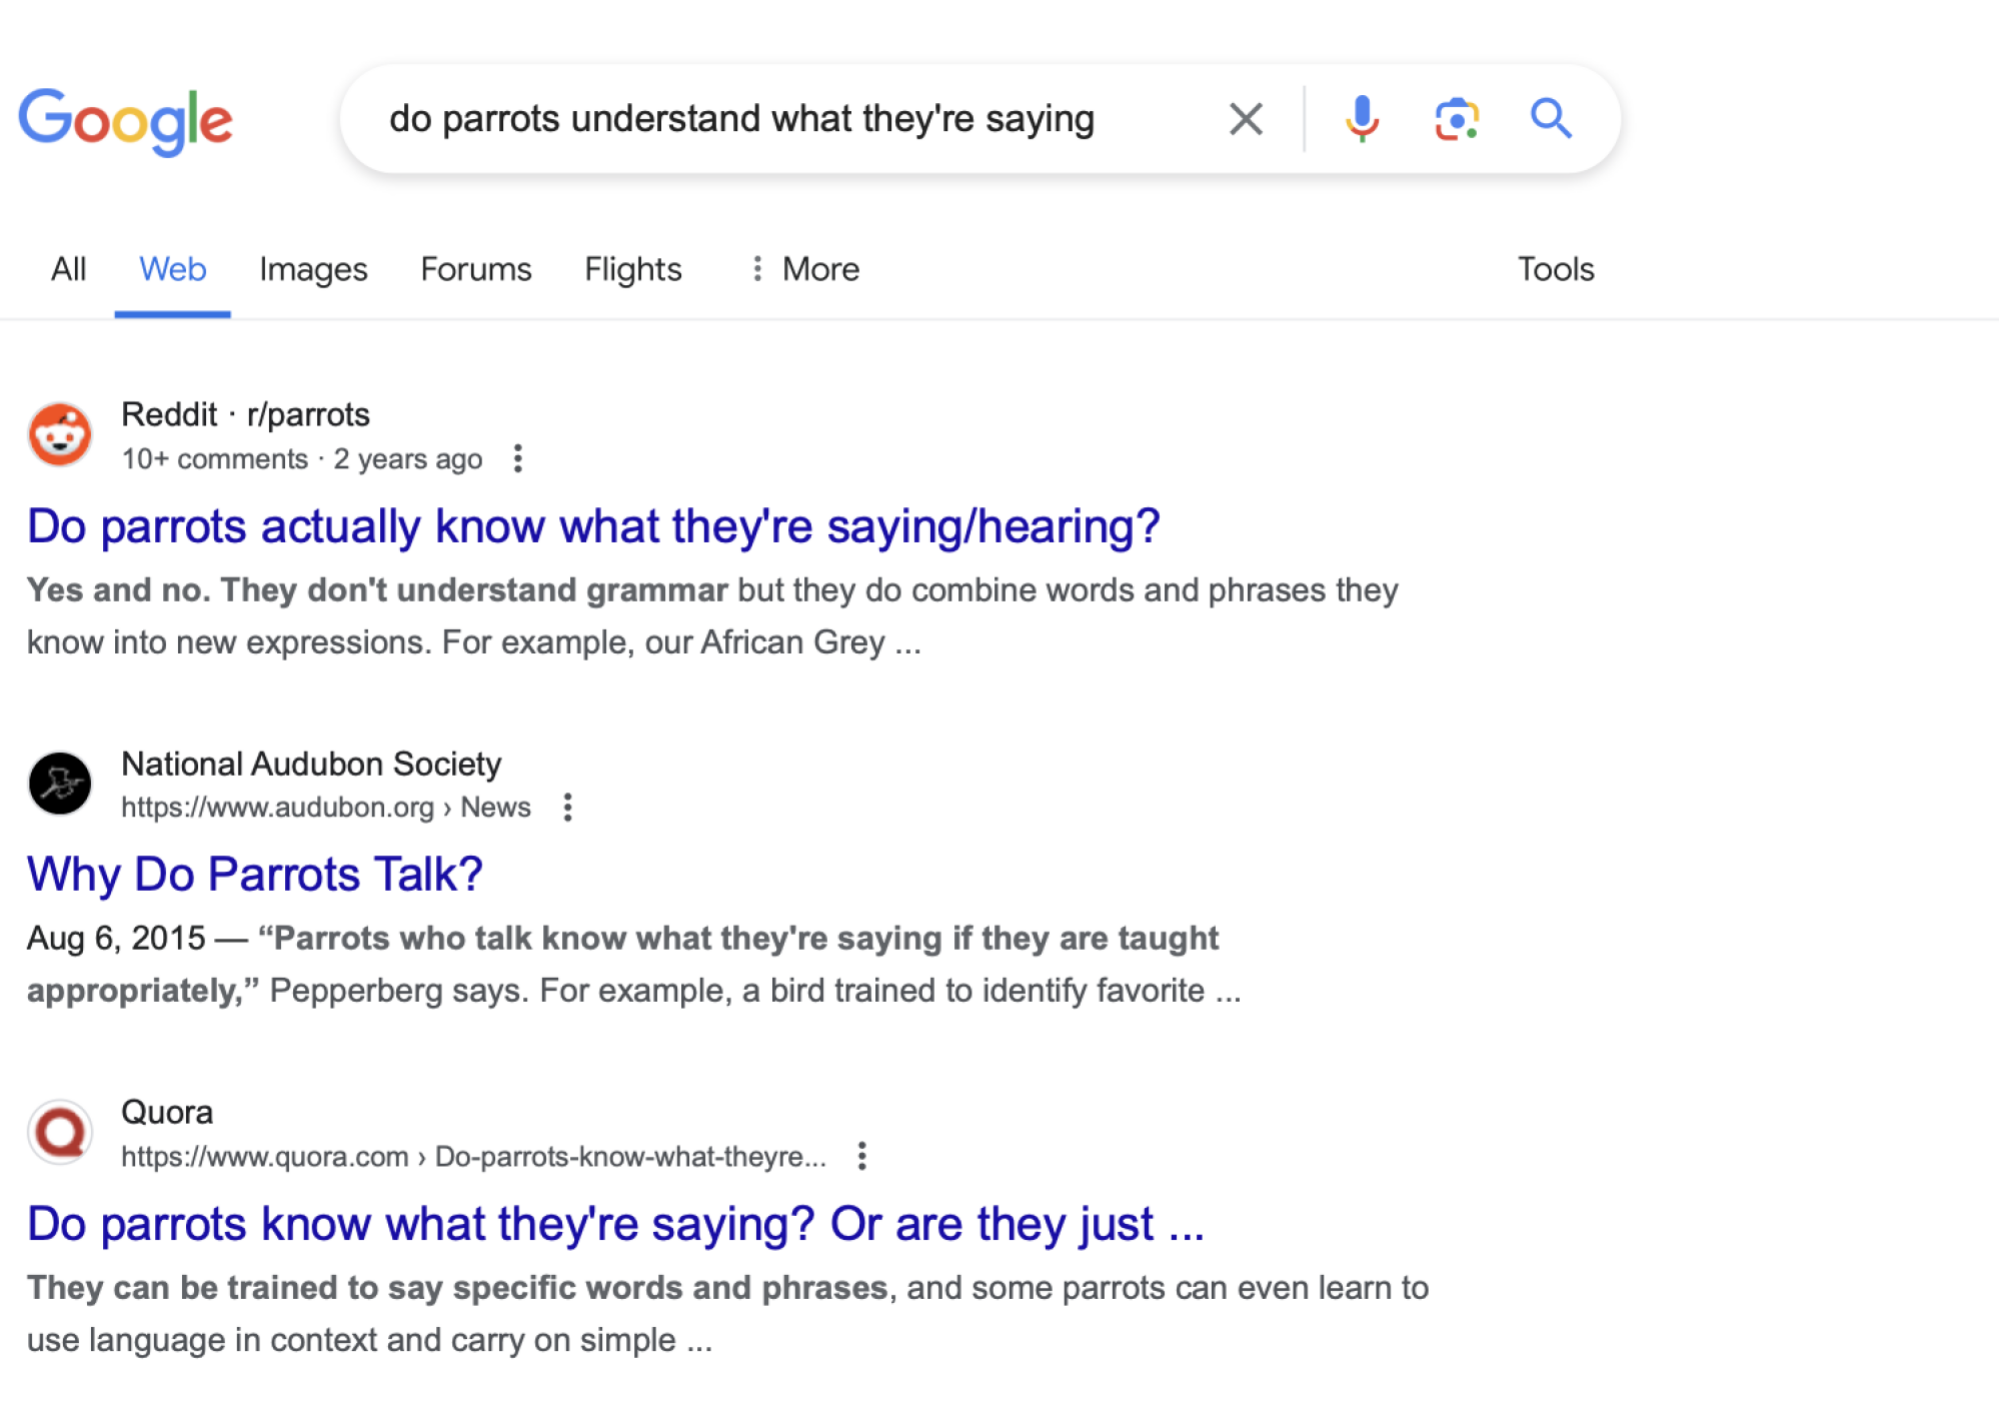 Le meilleur résultat pour "les perroquets comprennent-ils ce qu'ils disent" cette recherche sans IA amène l'utilisateur à une discussion Reddit.